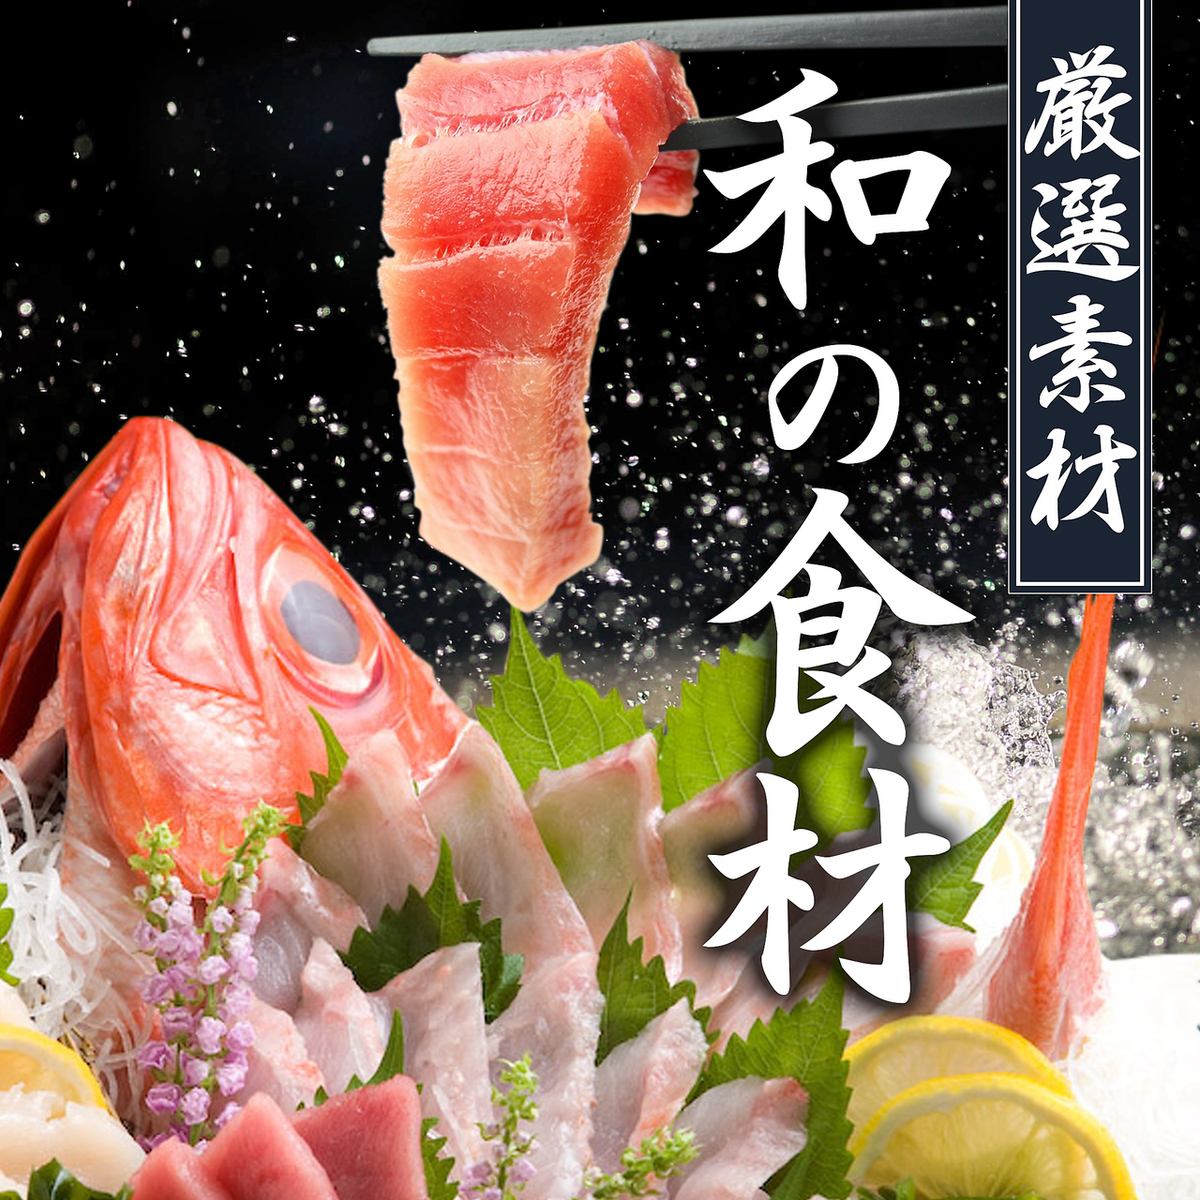 用從漁港直送的鮮魚和日本特色菜為您的宴會增添色彩。